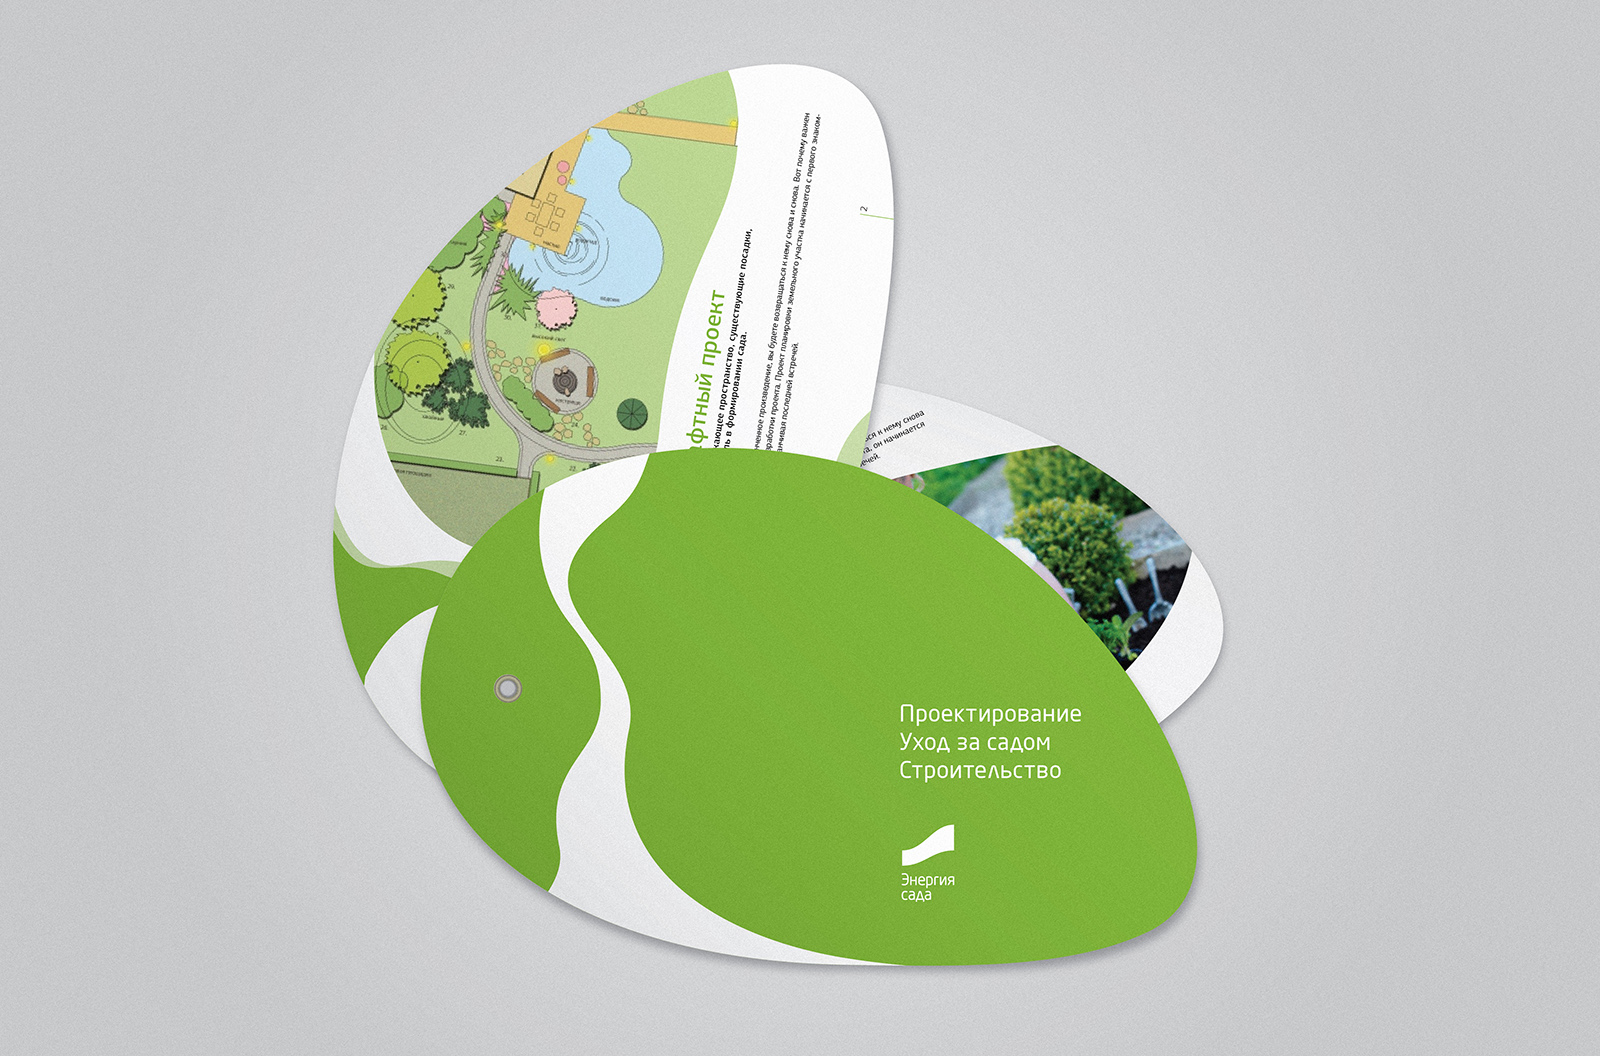 Дизайн и верстка буклета для ландшафтной компании Энергия сада. Ландшафтный брендинг: агентство WeDESIGN | МыДИЗАЙН